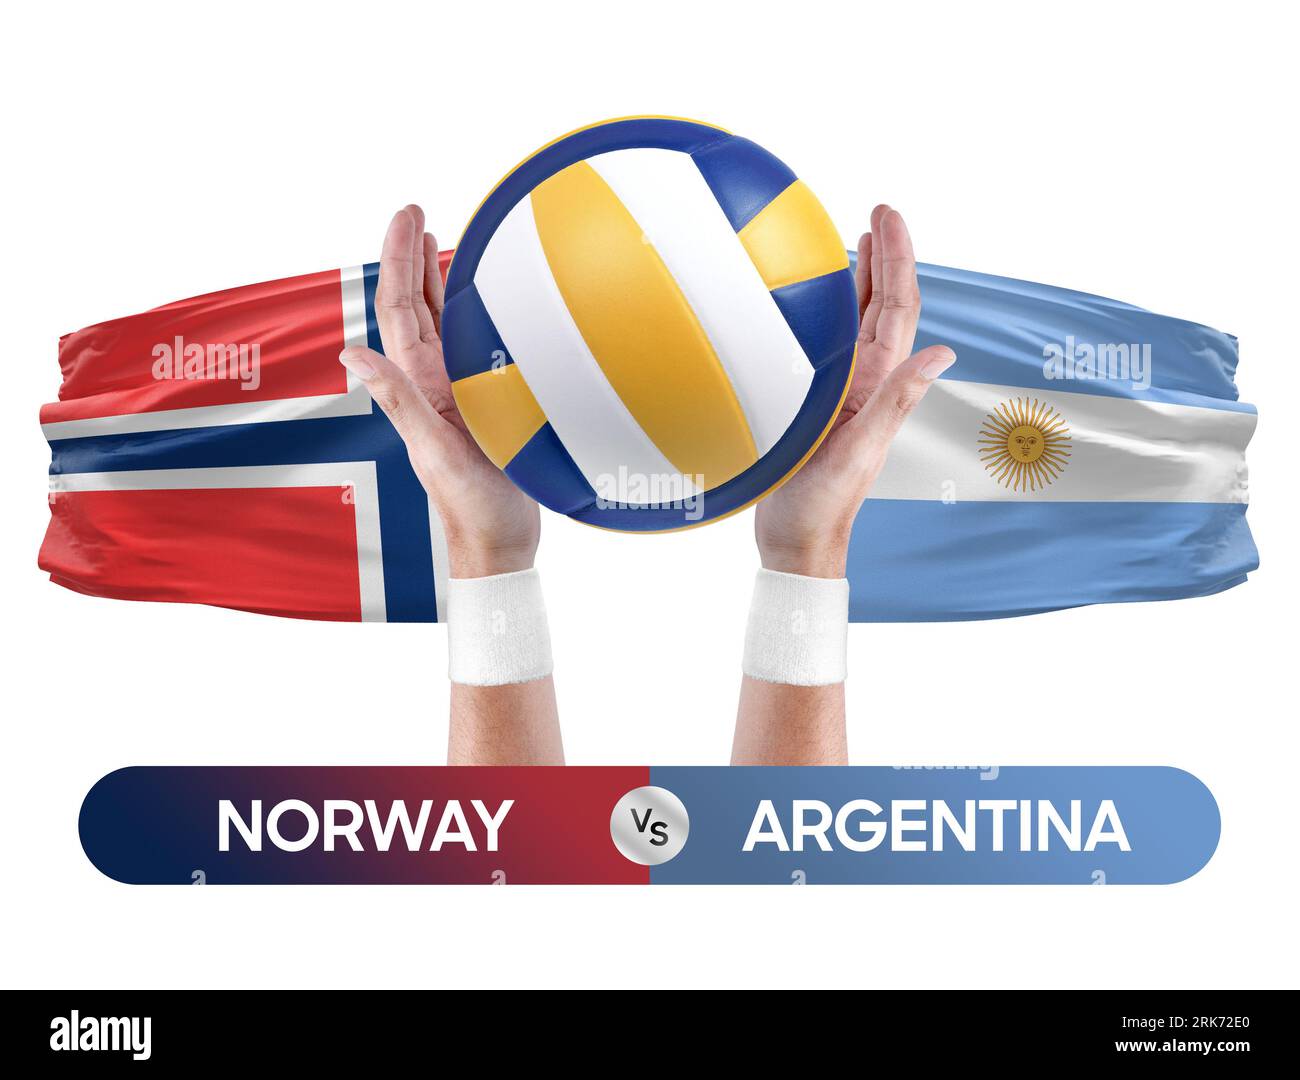 Norwegen gegen Argentinien Nationalmannschaften Volleyball Volleyball Volleyball Match Competition Concept. Stockfoto